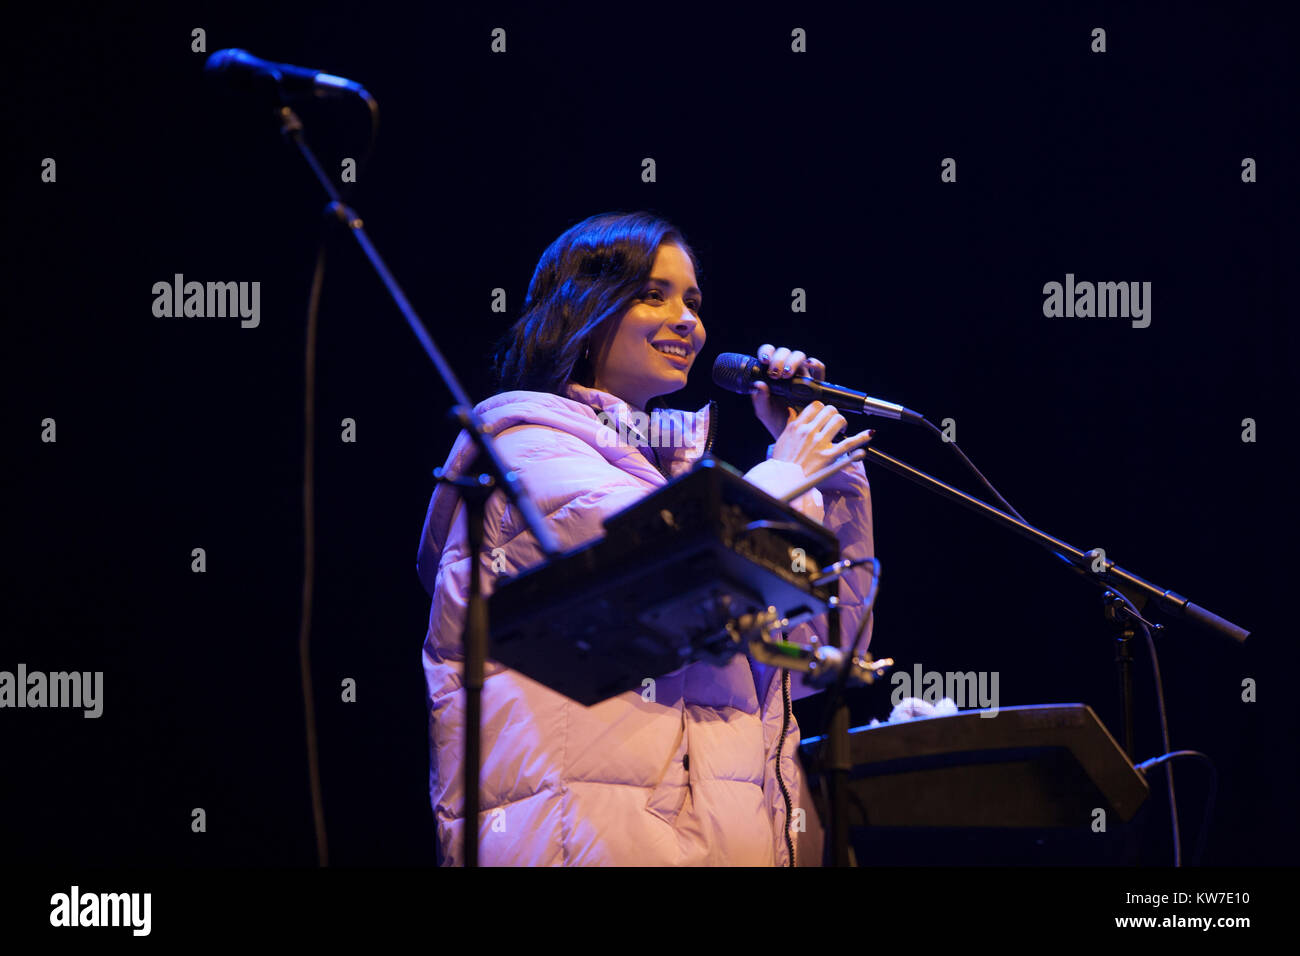 Edimbourg, Ecosse le 31 décembre 2017. Nina Nesbitt sur scène par Princess Gardens dans le cadre d'Édimbourg Hogmanay. Pako Mera/Alamy Live News Banque D'Images